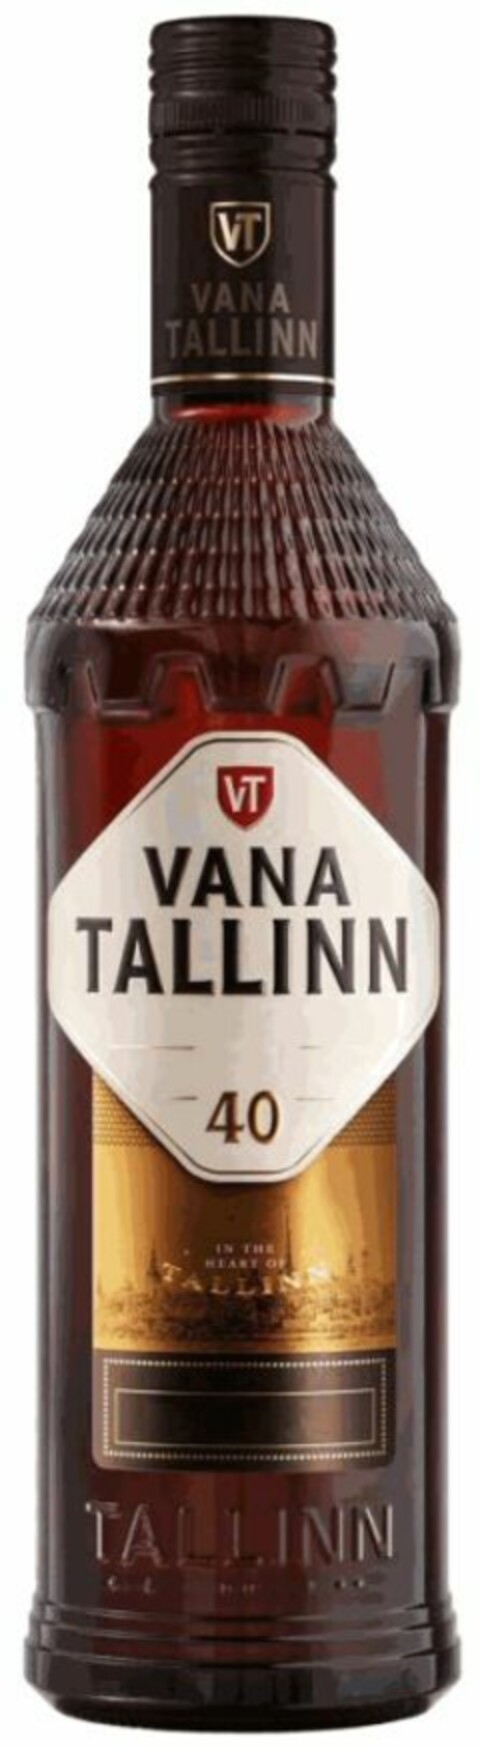 VT VANA TALLINN 40 Logo (WIPO, 10.10.2018)